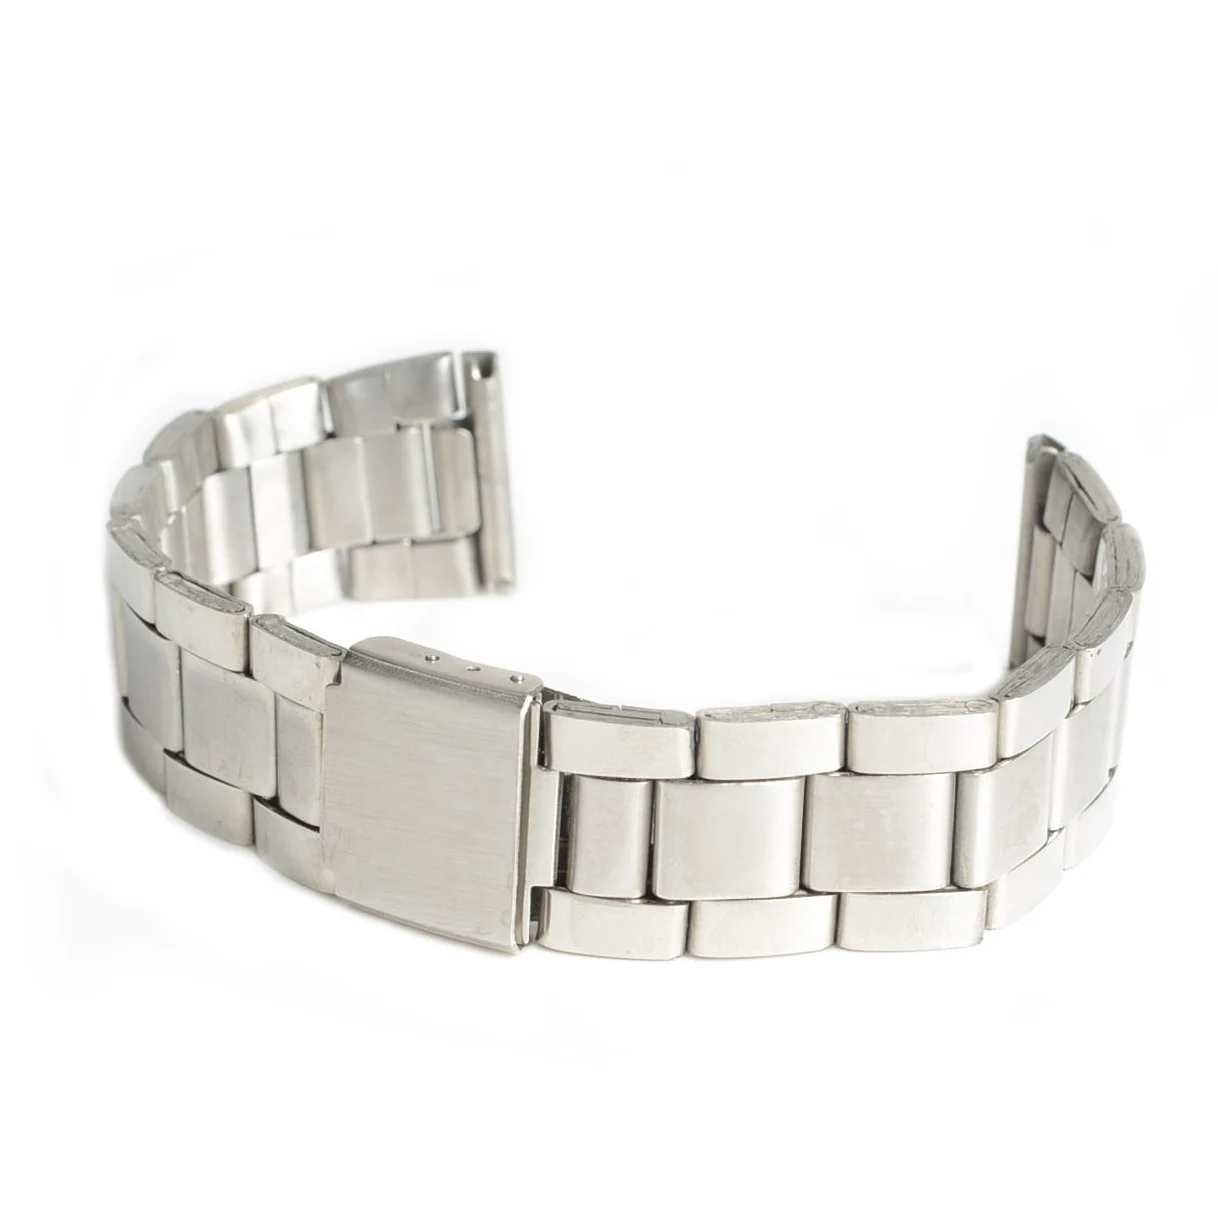 New Hotsale Men Women Silver Stainless Steel Watch Band Strap Bracelet ...